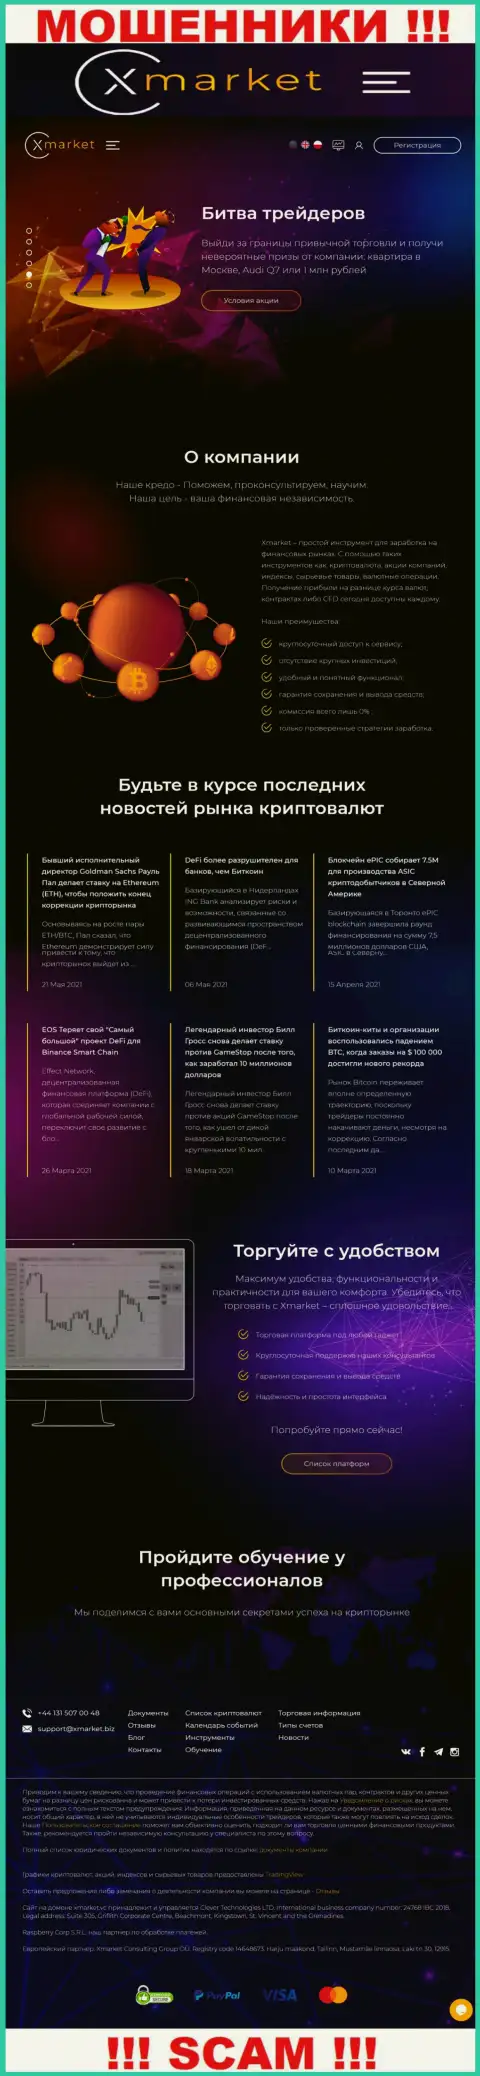 Официальный web-портал internet-мошенников и шулеров конторы Х Маркет